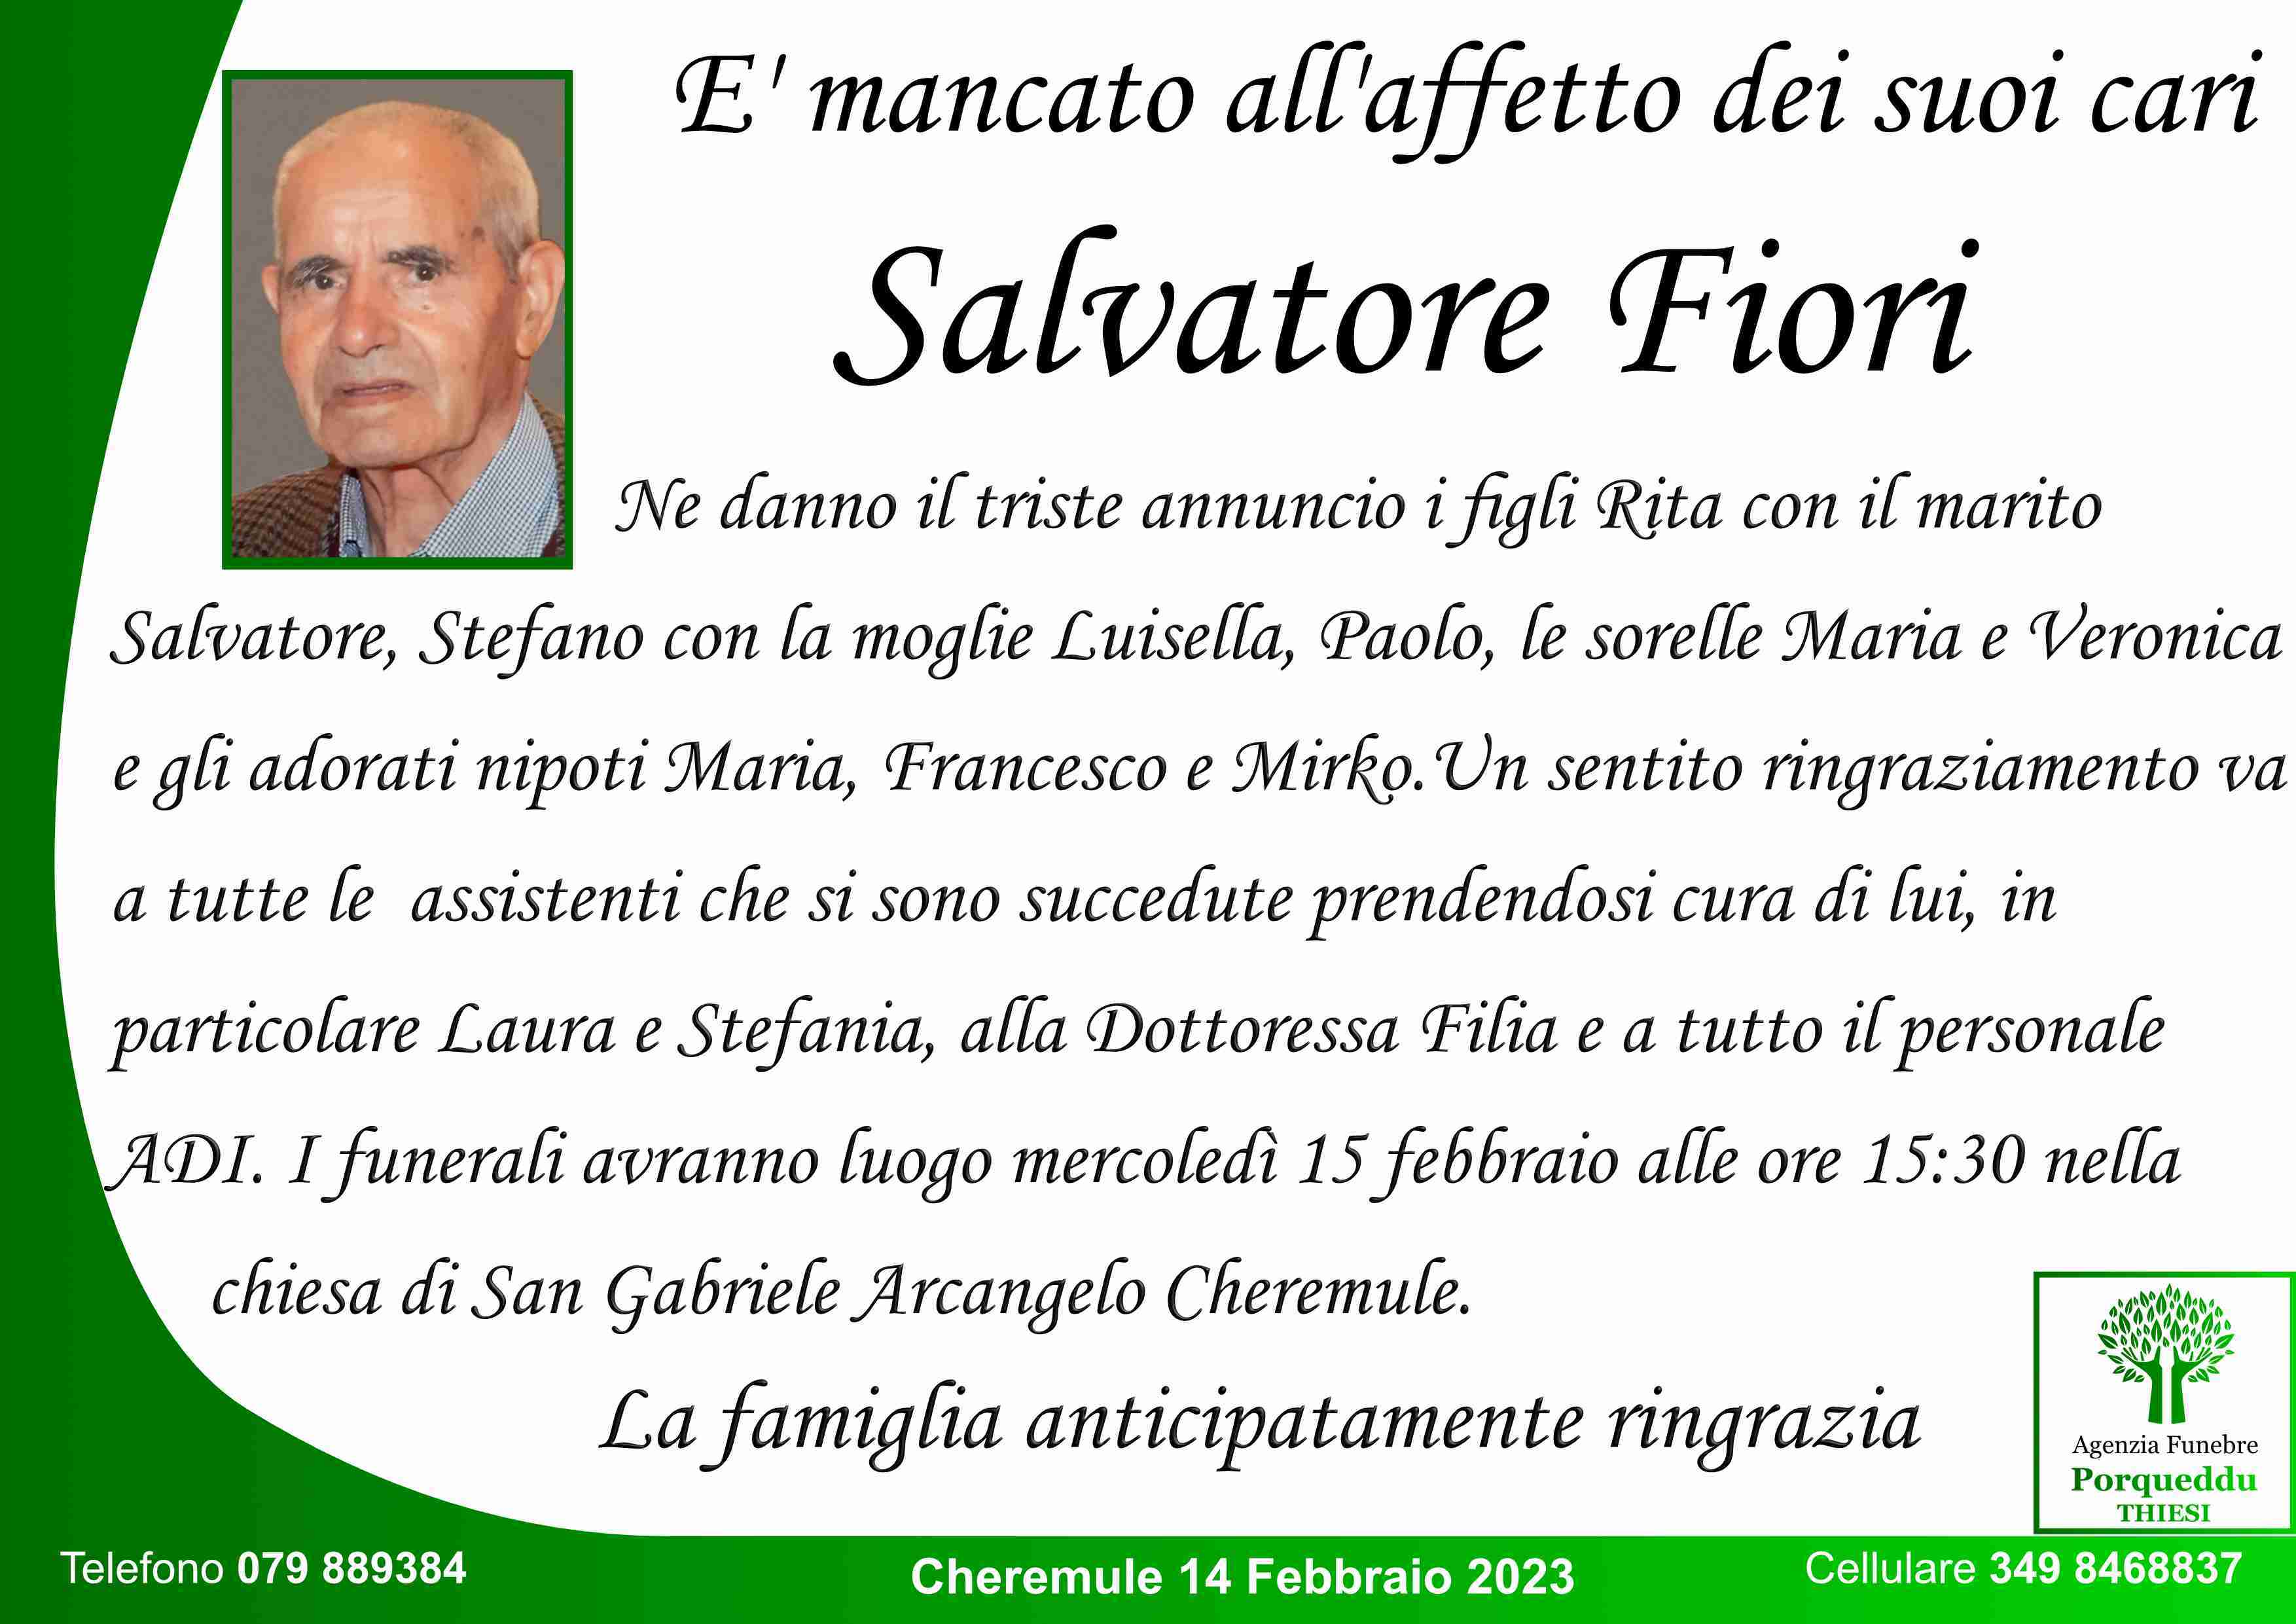 Salvatore Fiori